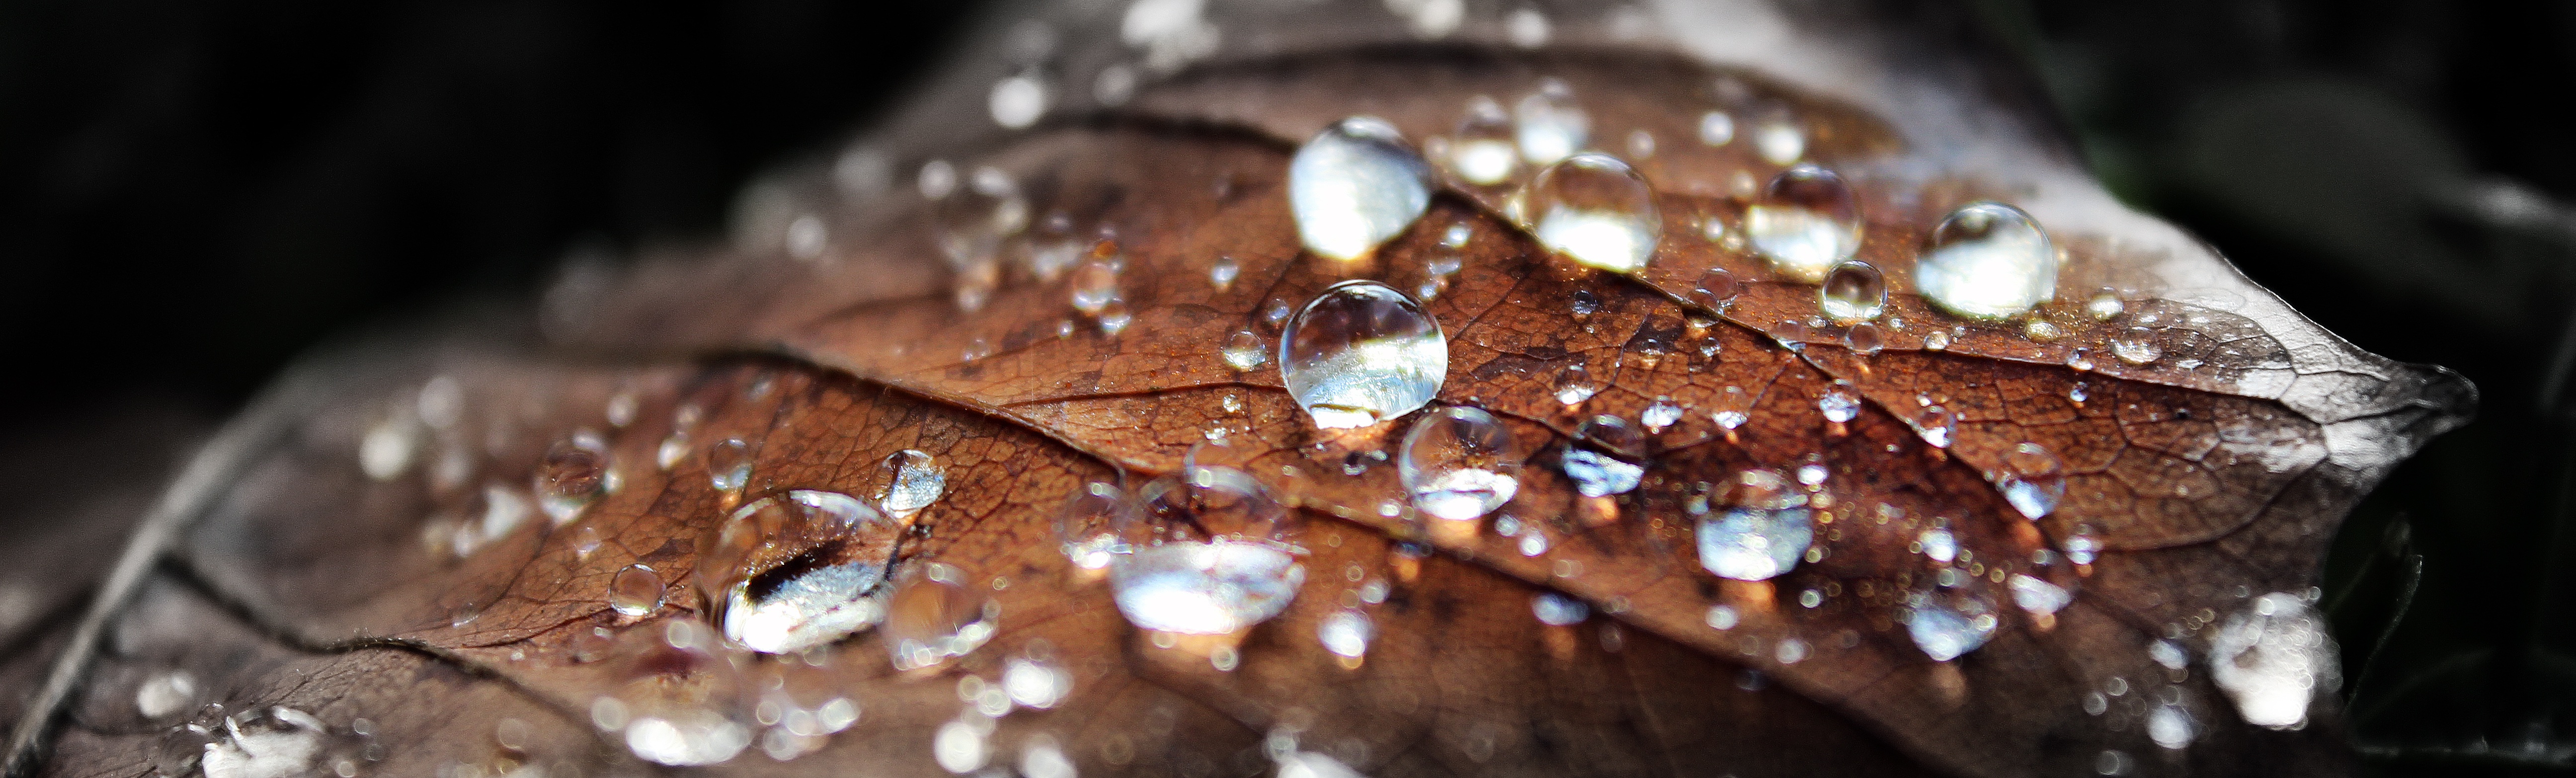 Бесплатное фото Капли дождя на высохшем листке